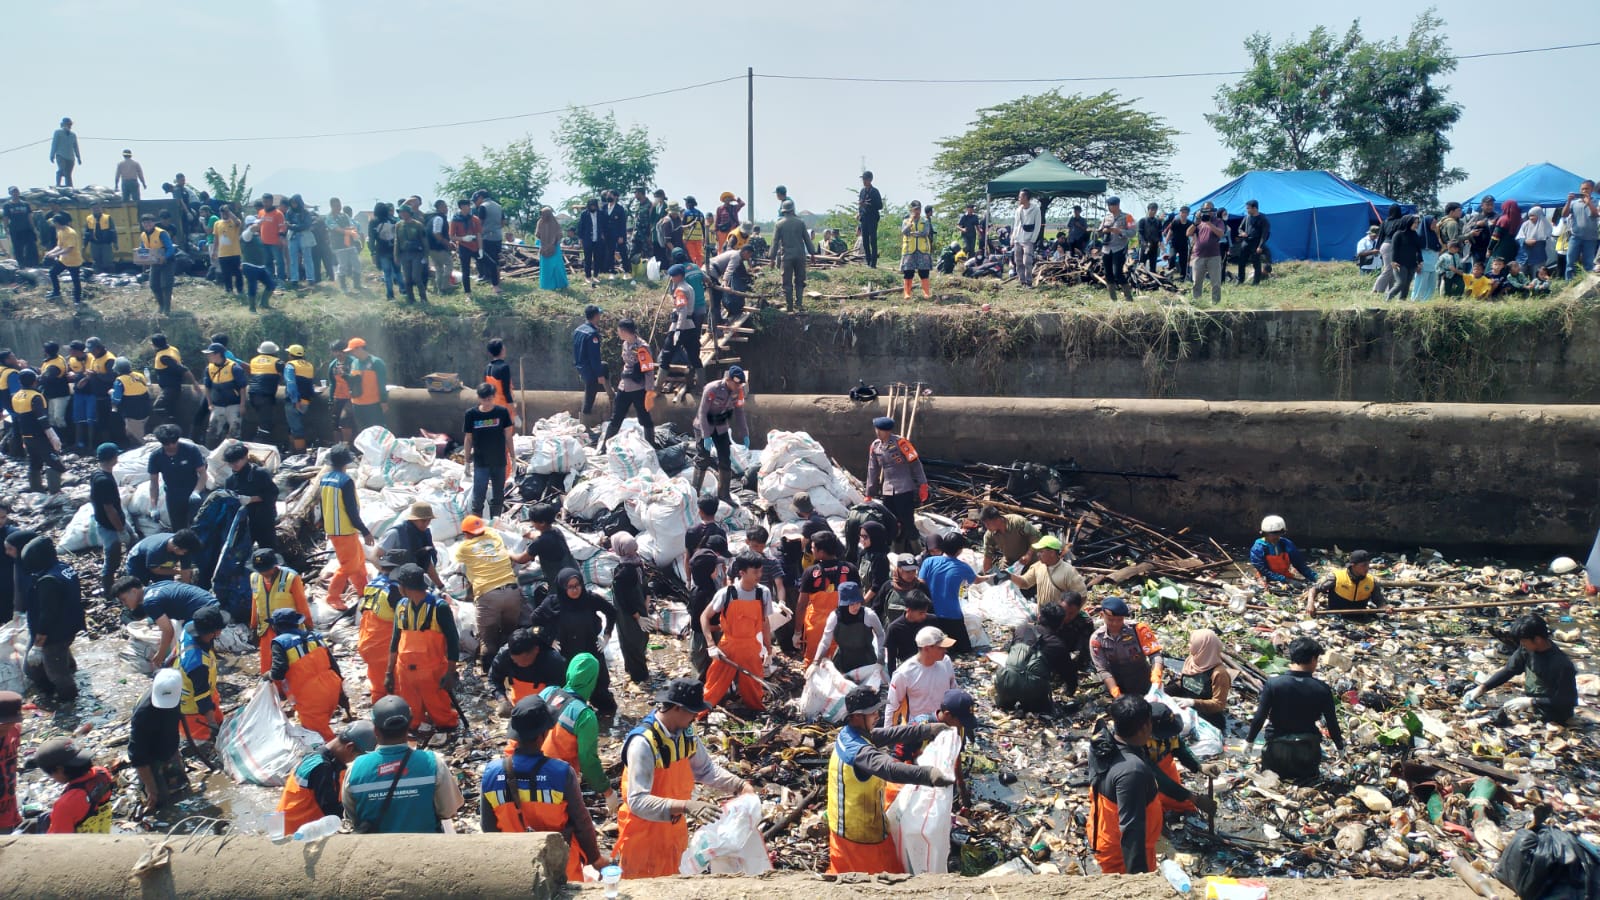 Antusias ratusan orang dalam aksi gotongroyong membersihkan Sungai Cikeruh. (Yanuar/Jabar Ekspres)